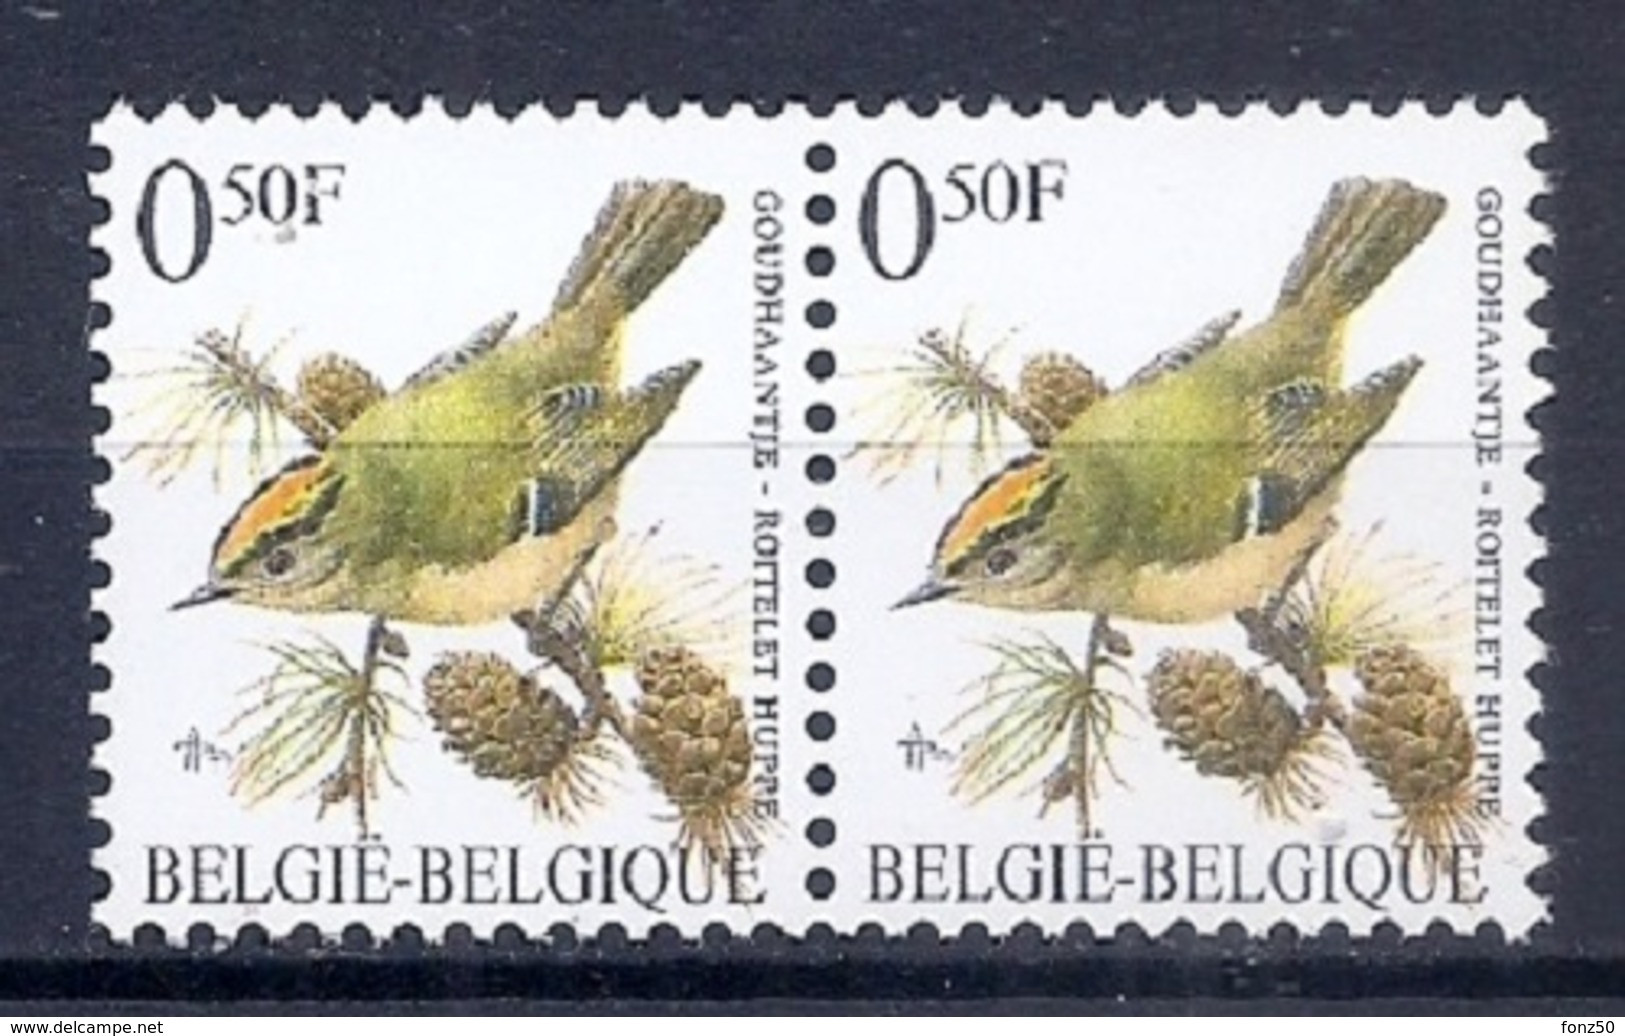 BELGIE * Buzin * Nr 2424 * Postfris Xx * FLUOR  PAPIER - 1985-.. Oiseaux (Buzin)